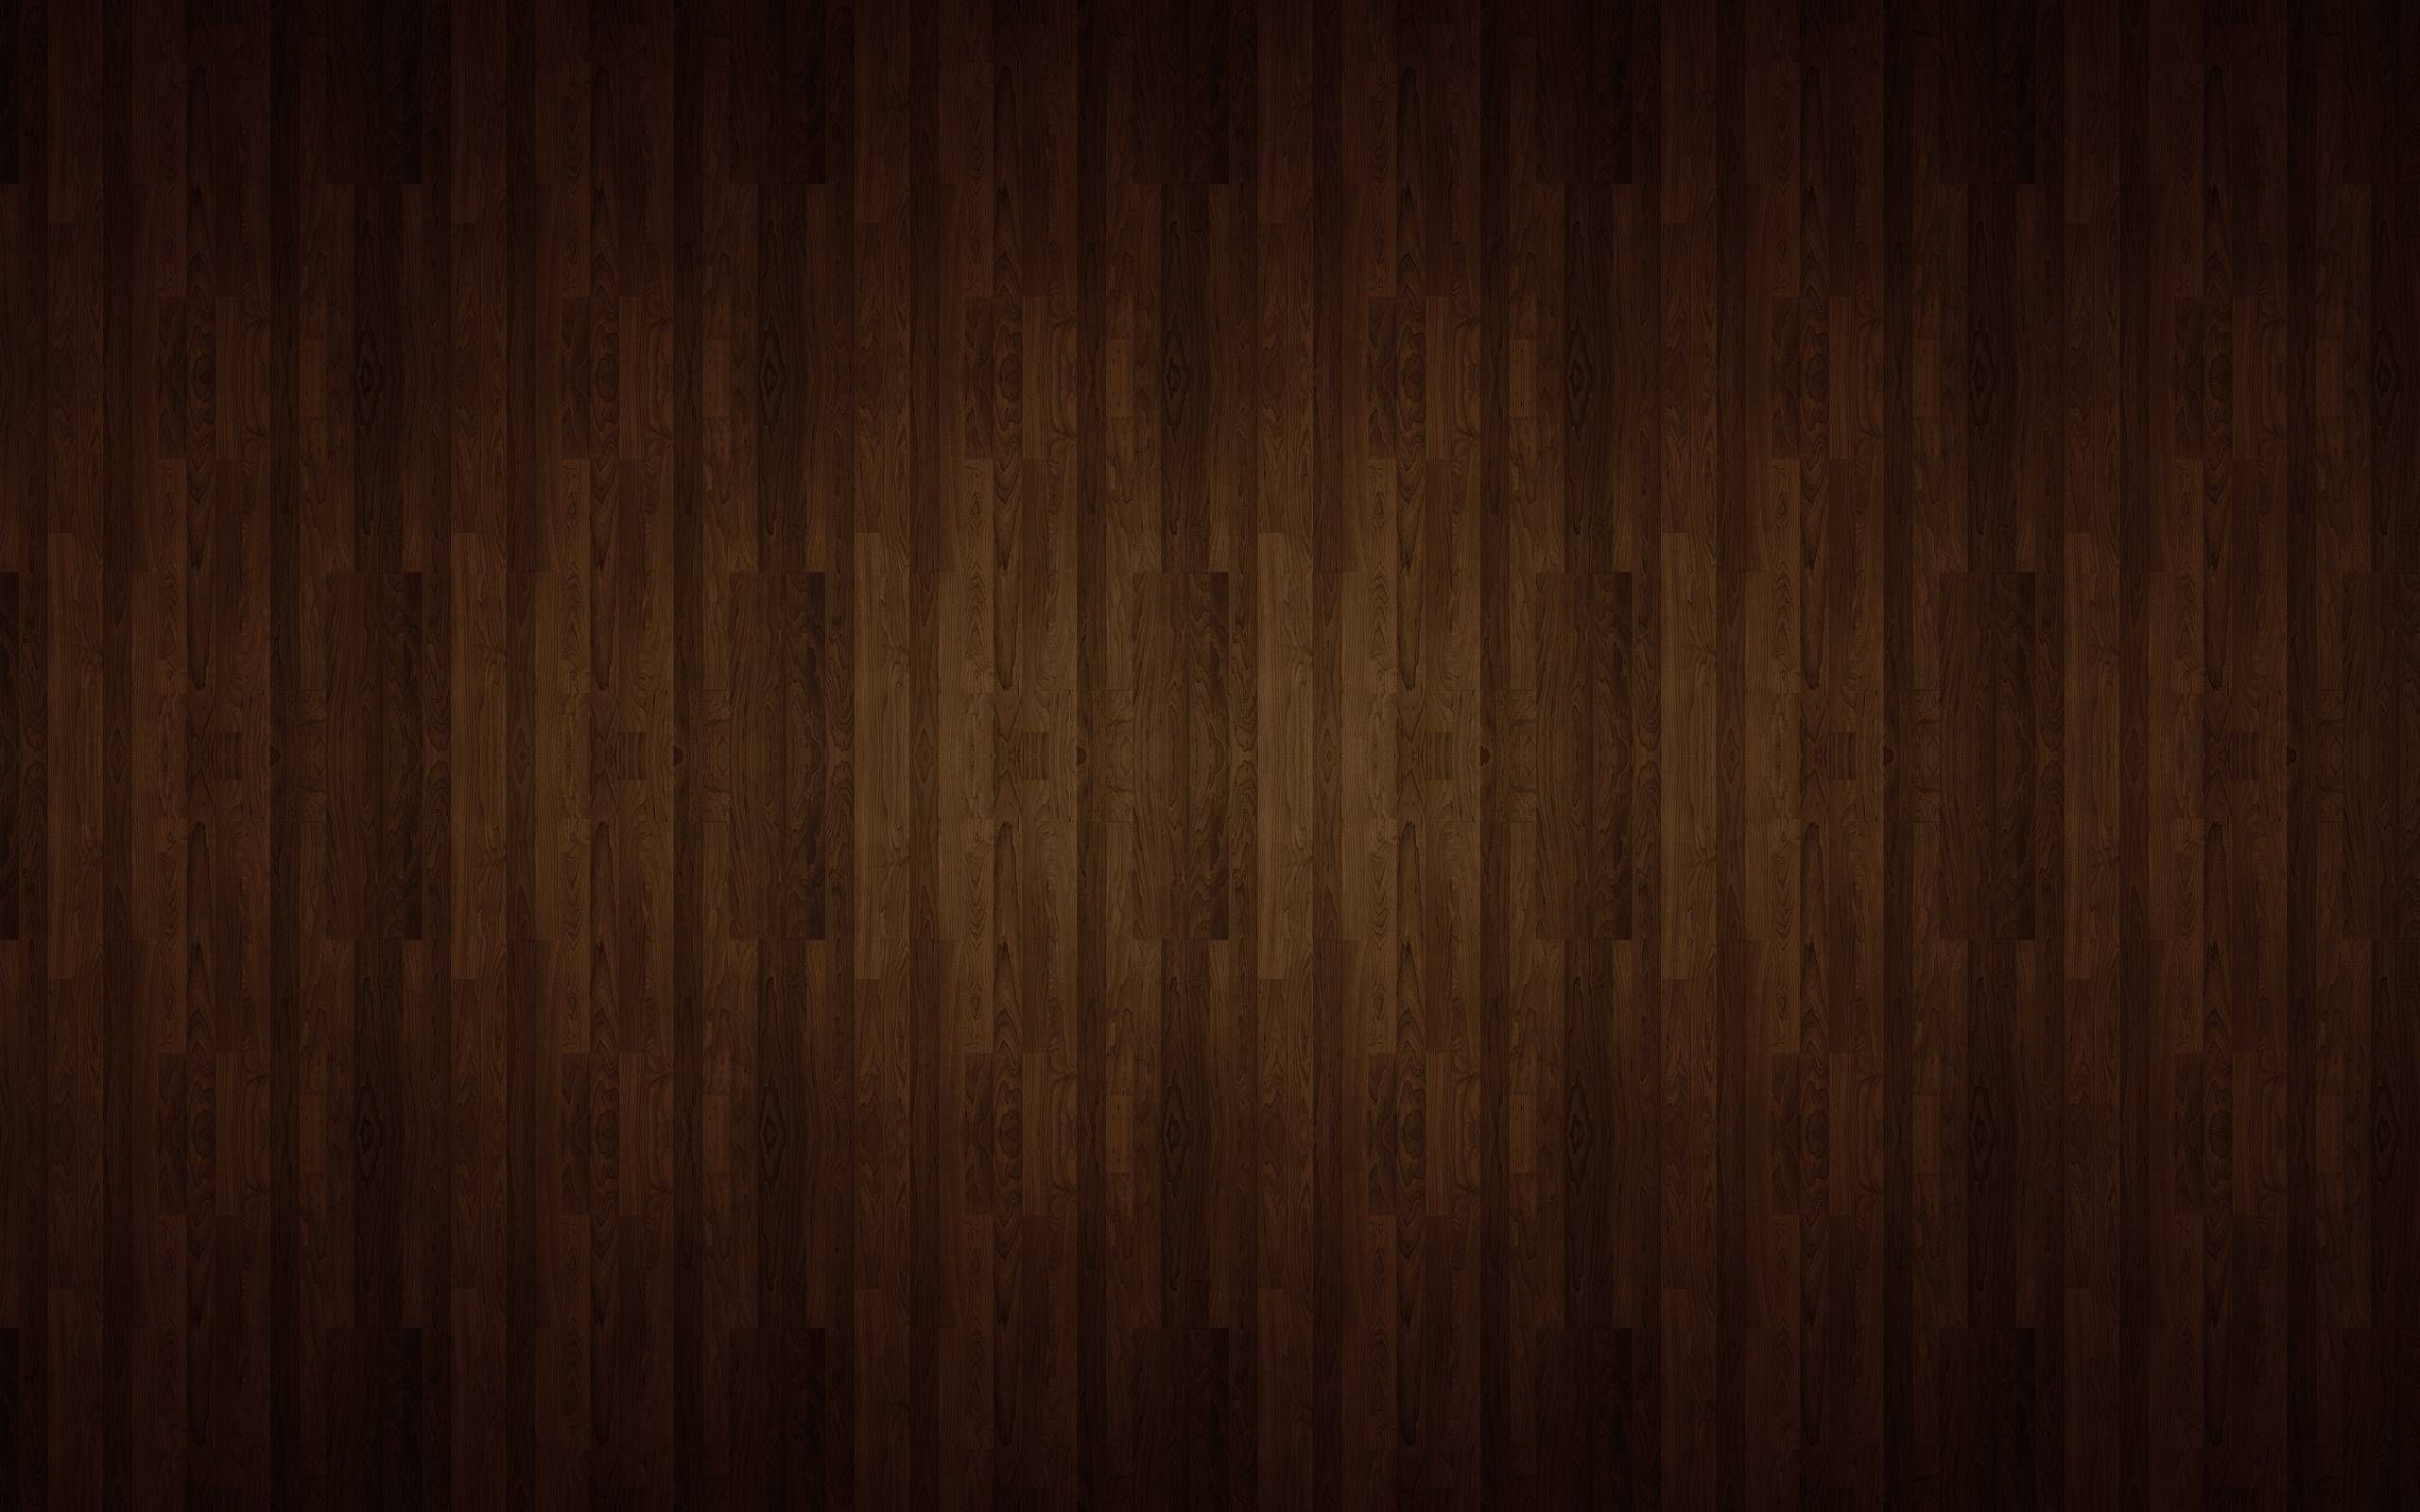 Tải miễn phí hình nền gỗ nâu đậm để trang trí cho màn hình điện thoại, máy tính của bạn. Những tấm nền này mang đến cho bạn cảm giác ấm áp, gần gũi và đầy đặn. Hãy tải ngay để cảm nhận sự độc đáo và trang trọng của nền gỗ này.